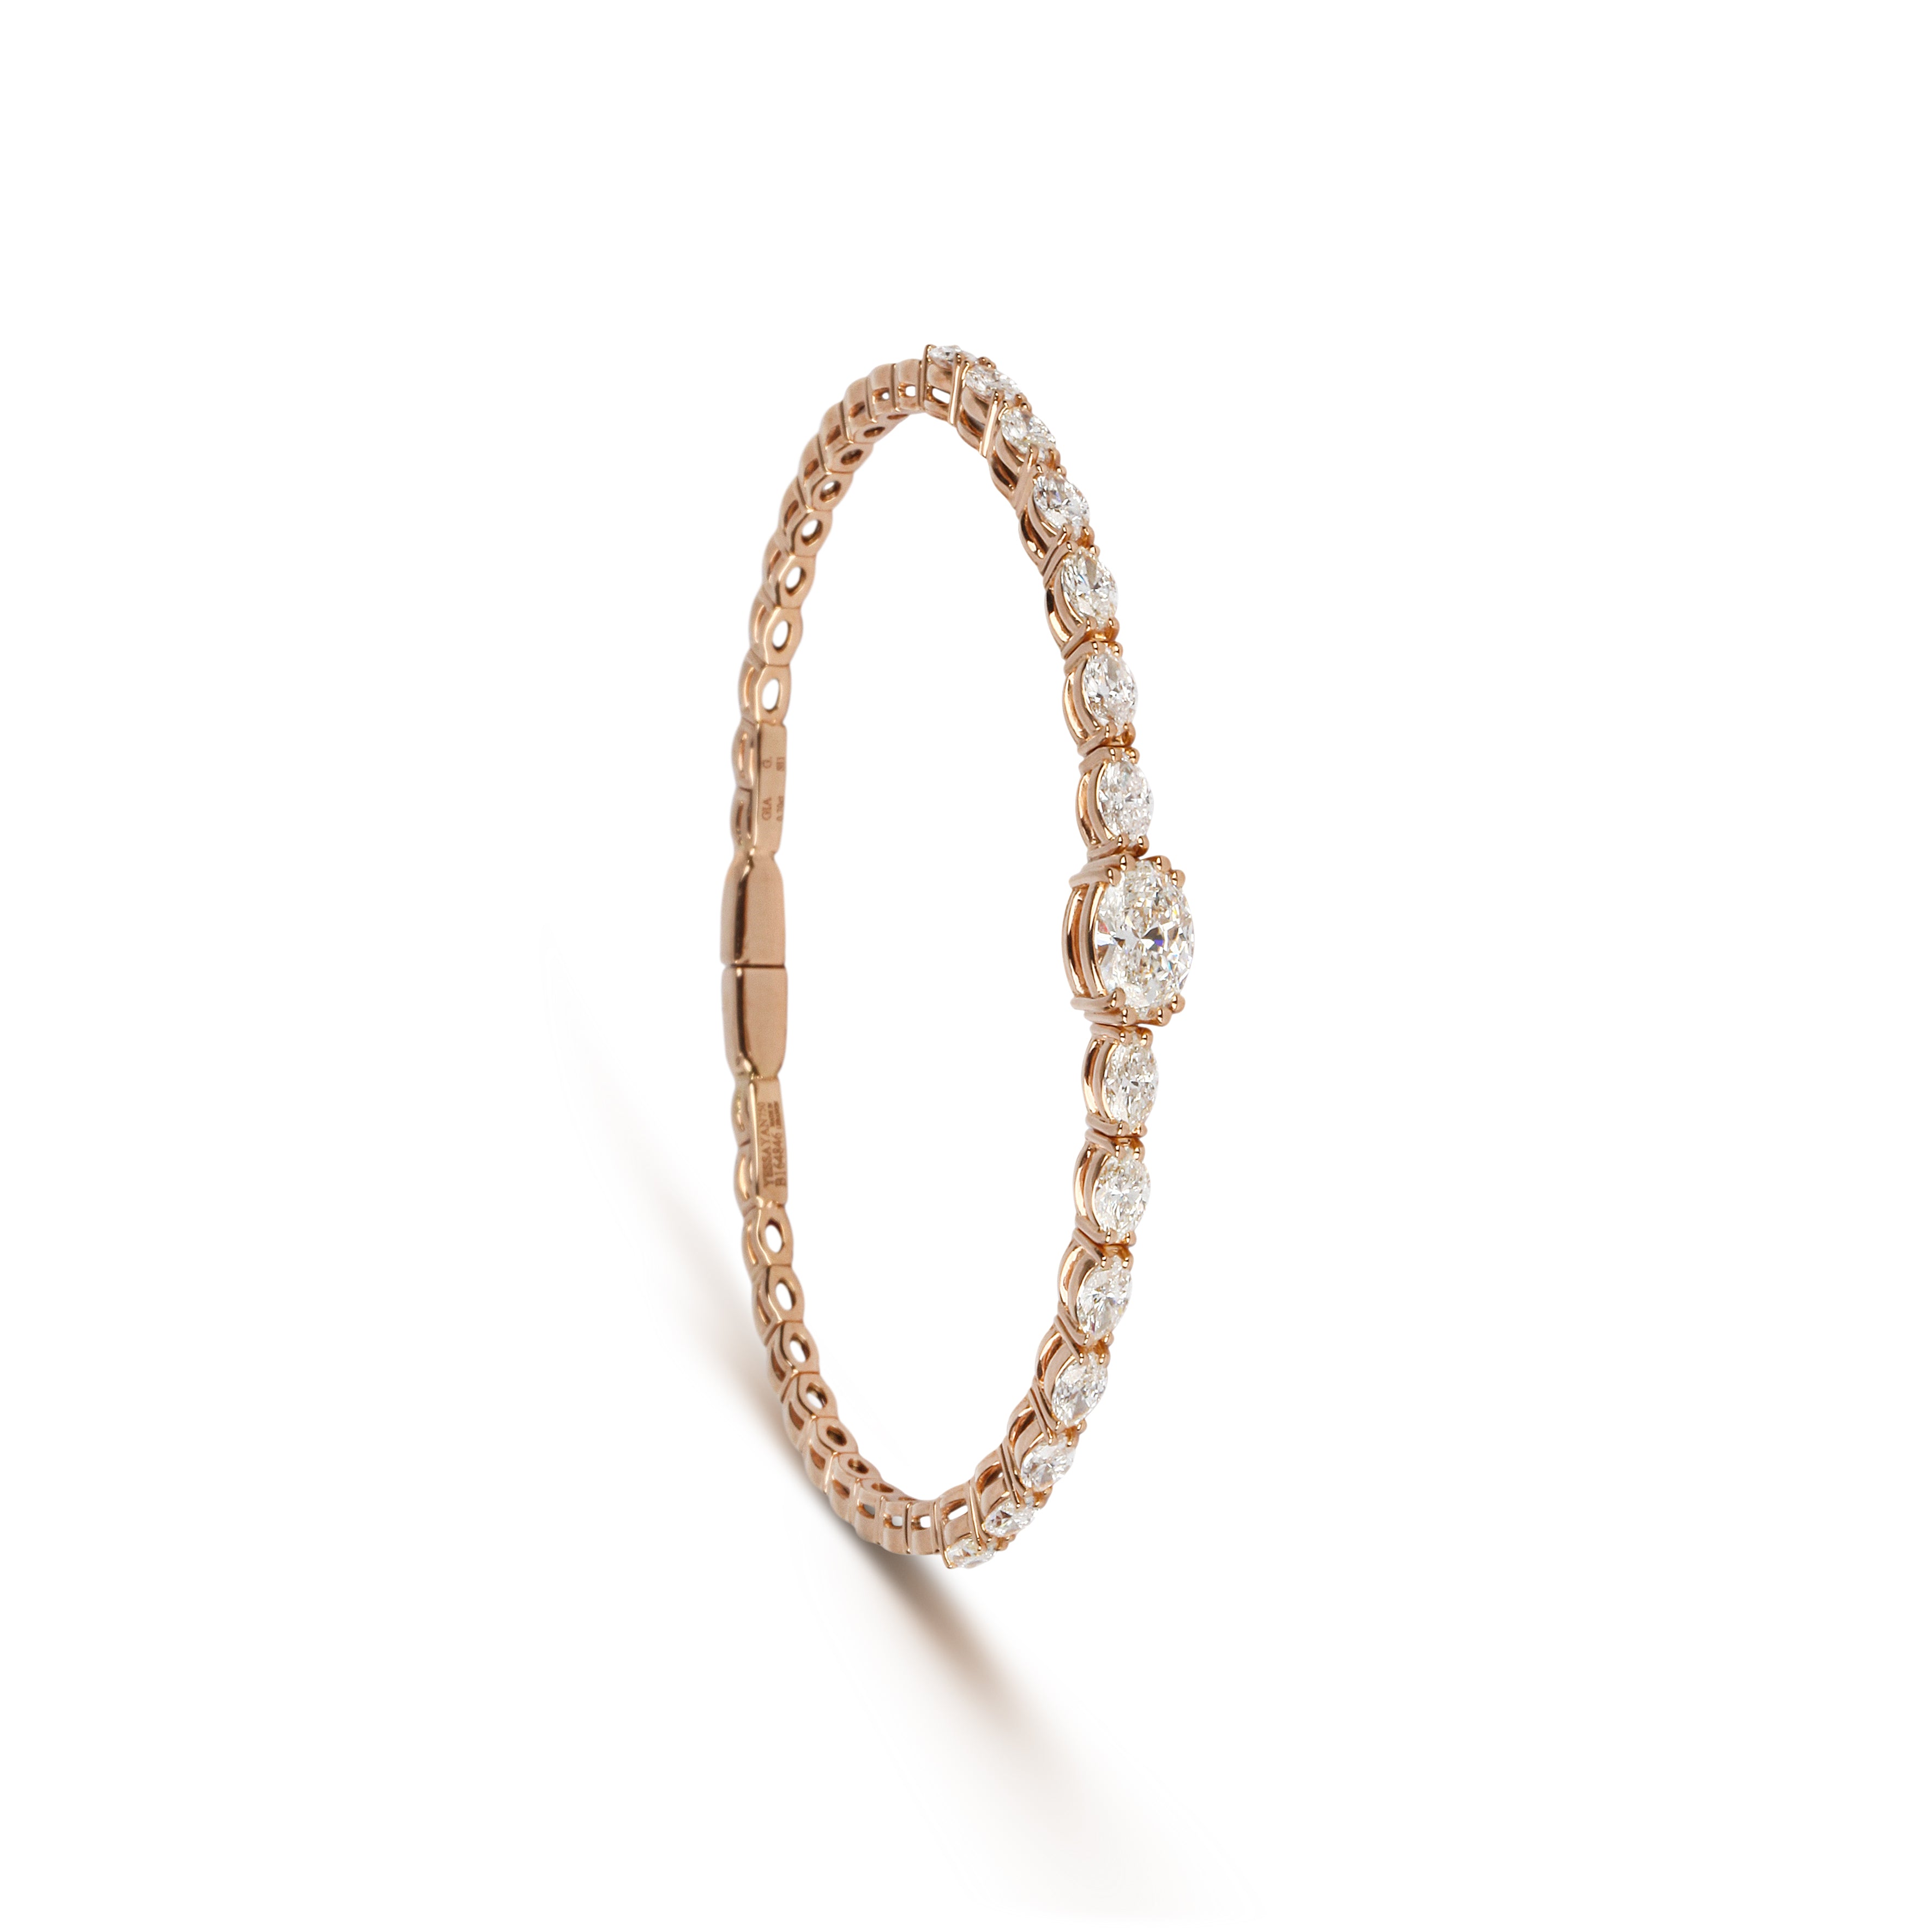 Certified Solitaire Diamond Bracelet | Jewellery Design | Bracelet Design